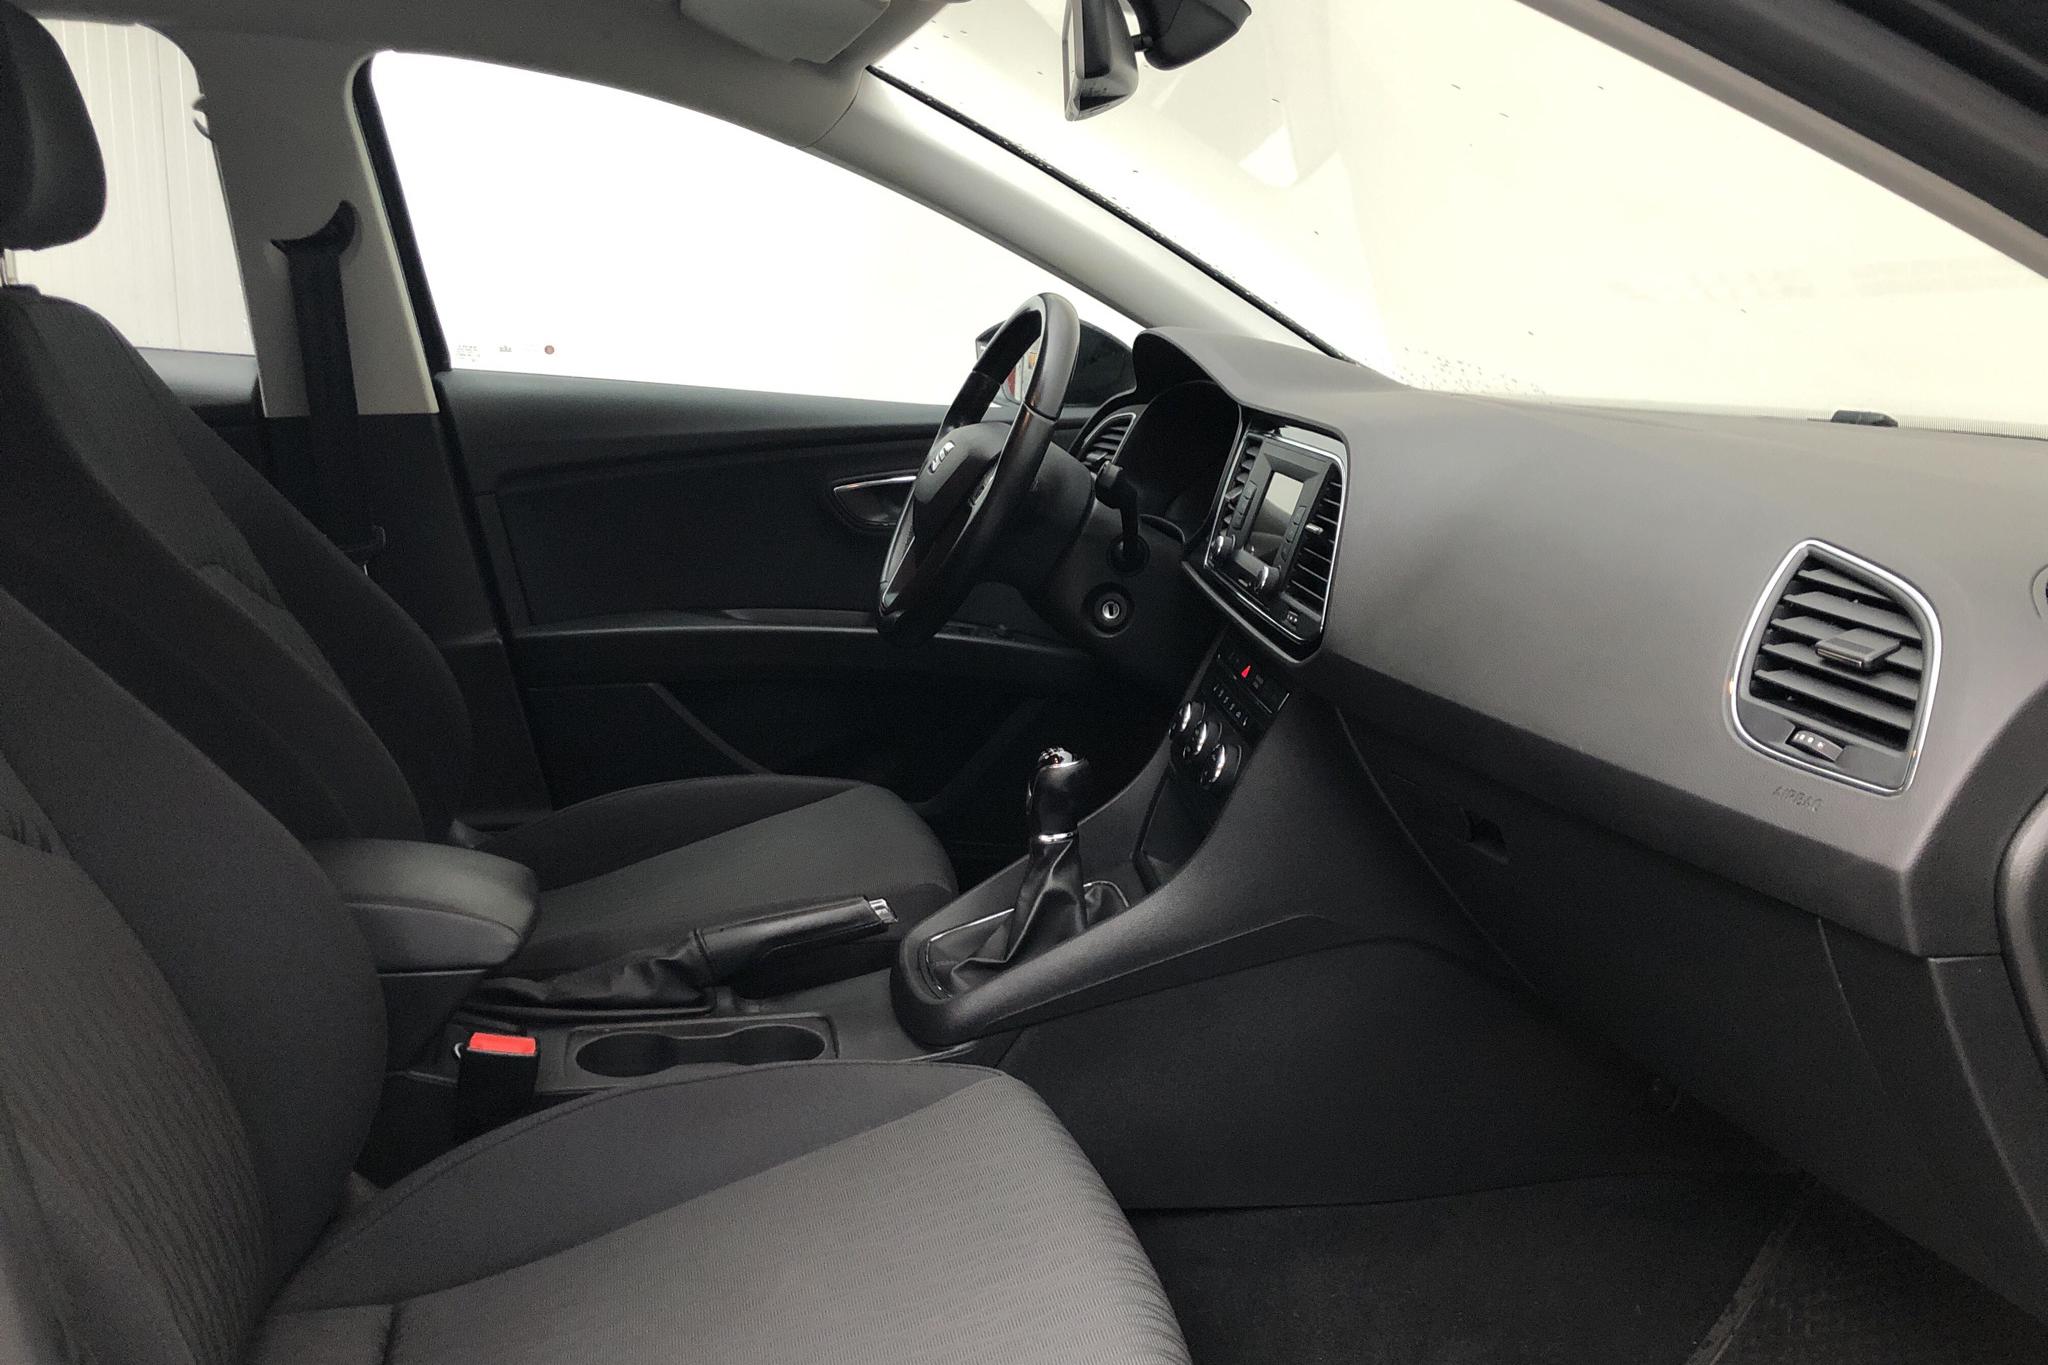 Seat Leon 1.2 TSI 5dr (110hk) - 130 620 km - Manual - black - 2016